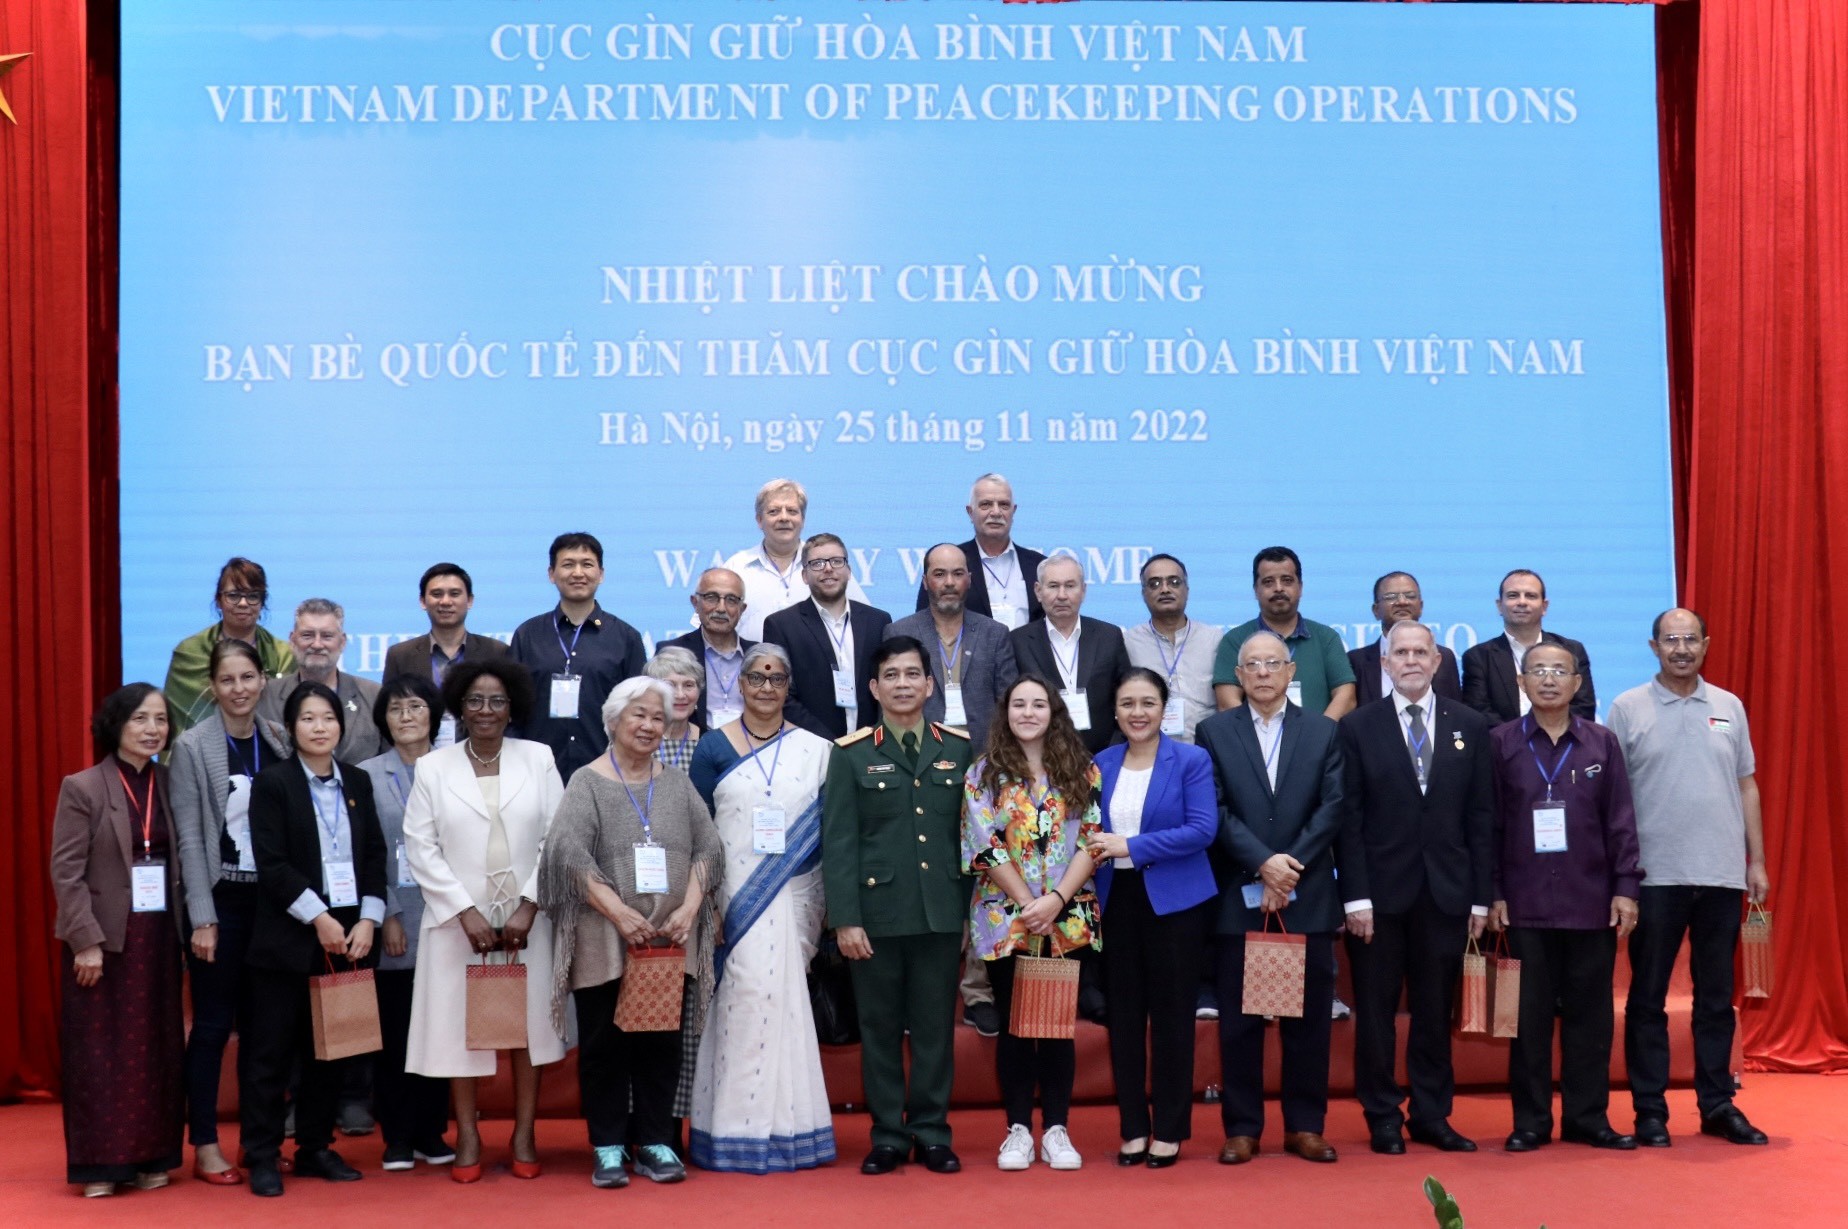 Cục Gìn giữ hòa bình Việt Nam tặng quà 